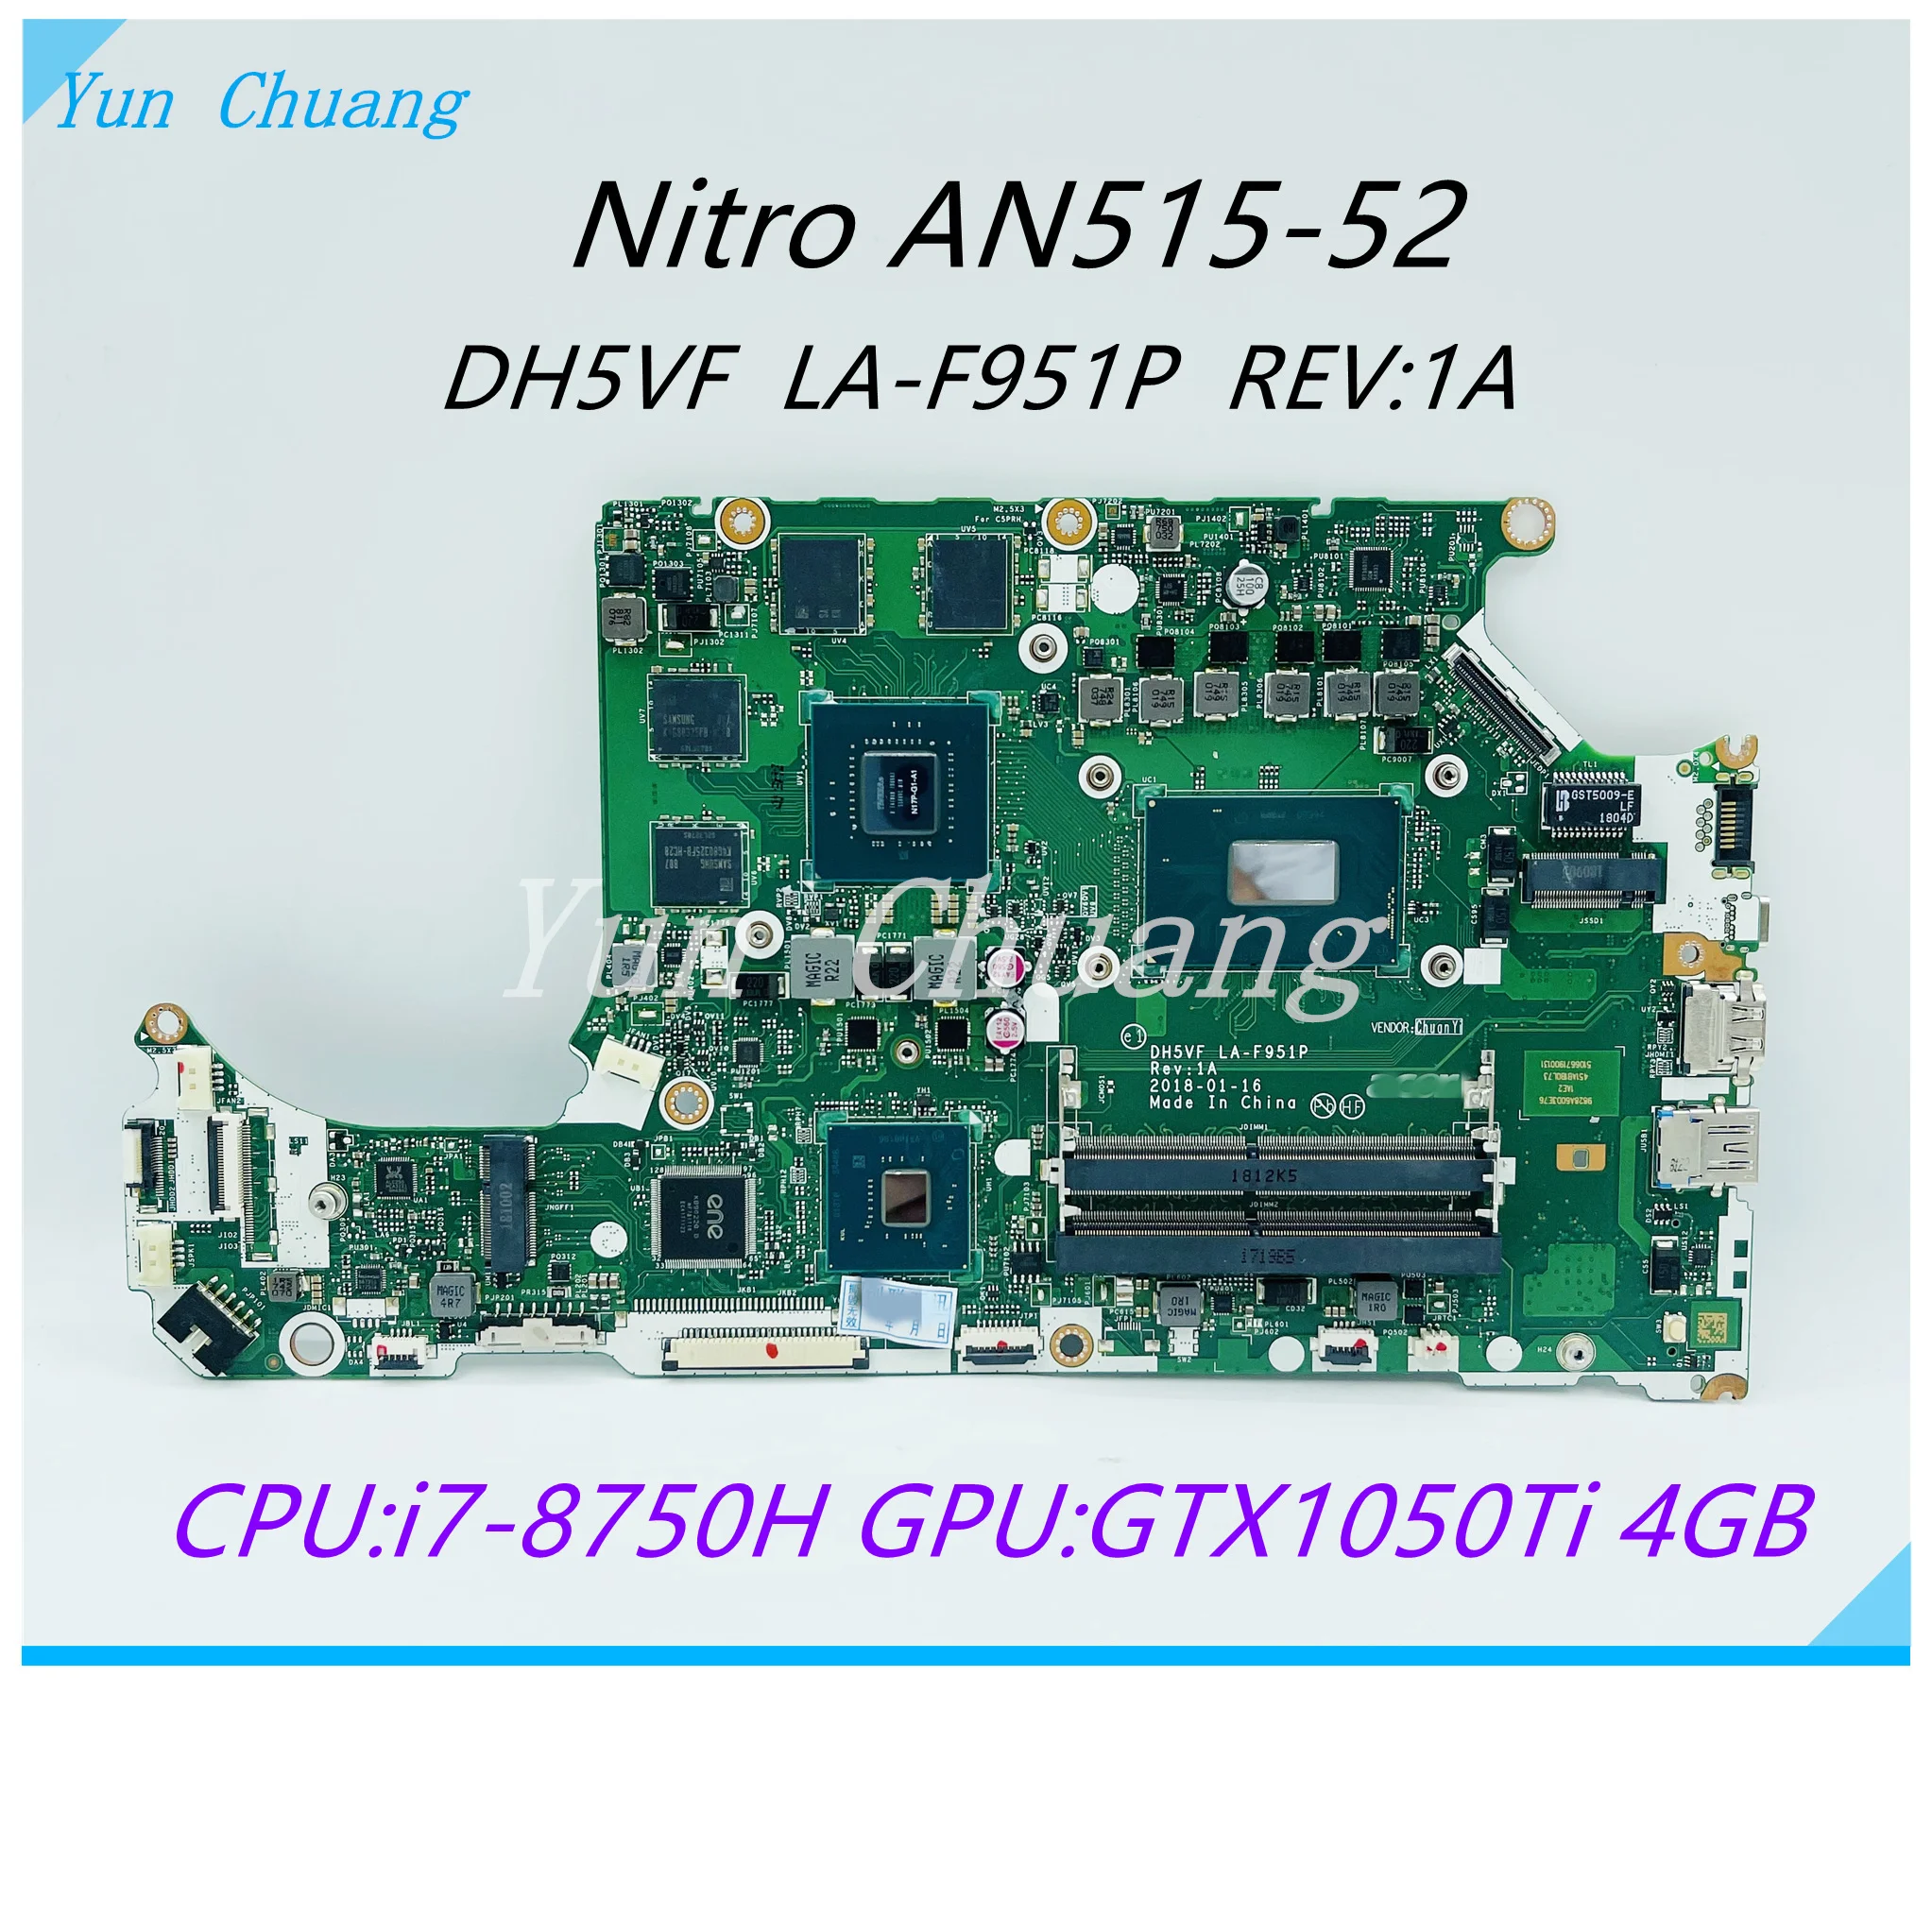 Фото DH5VF LA-F951P REV:1A для Acer Nitro AN515-53 AN515-52 A715-72G материнская плата ноутбука с I7-8750H CPU GTX1050 4 Гб